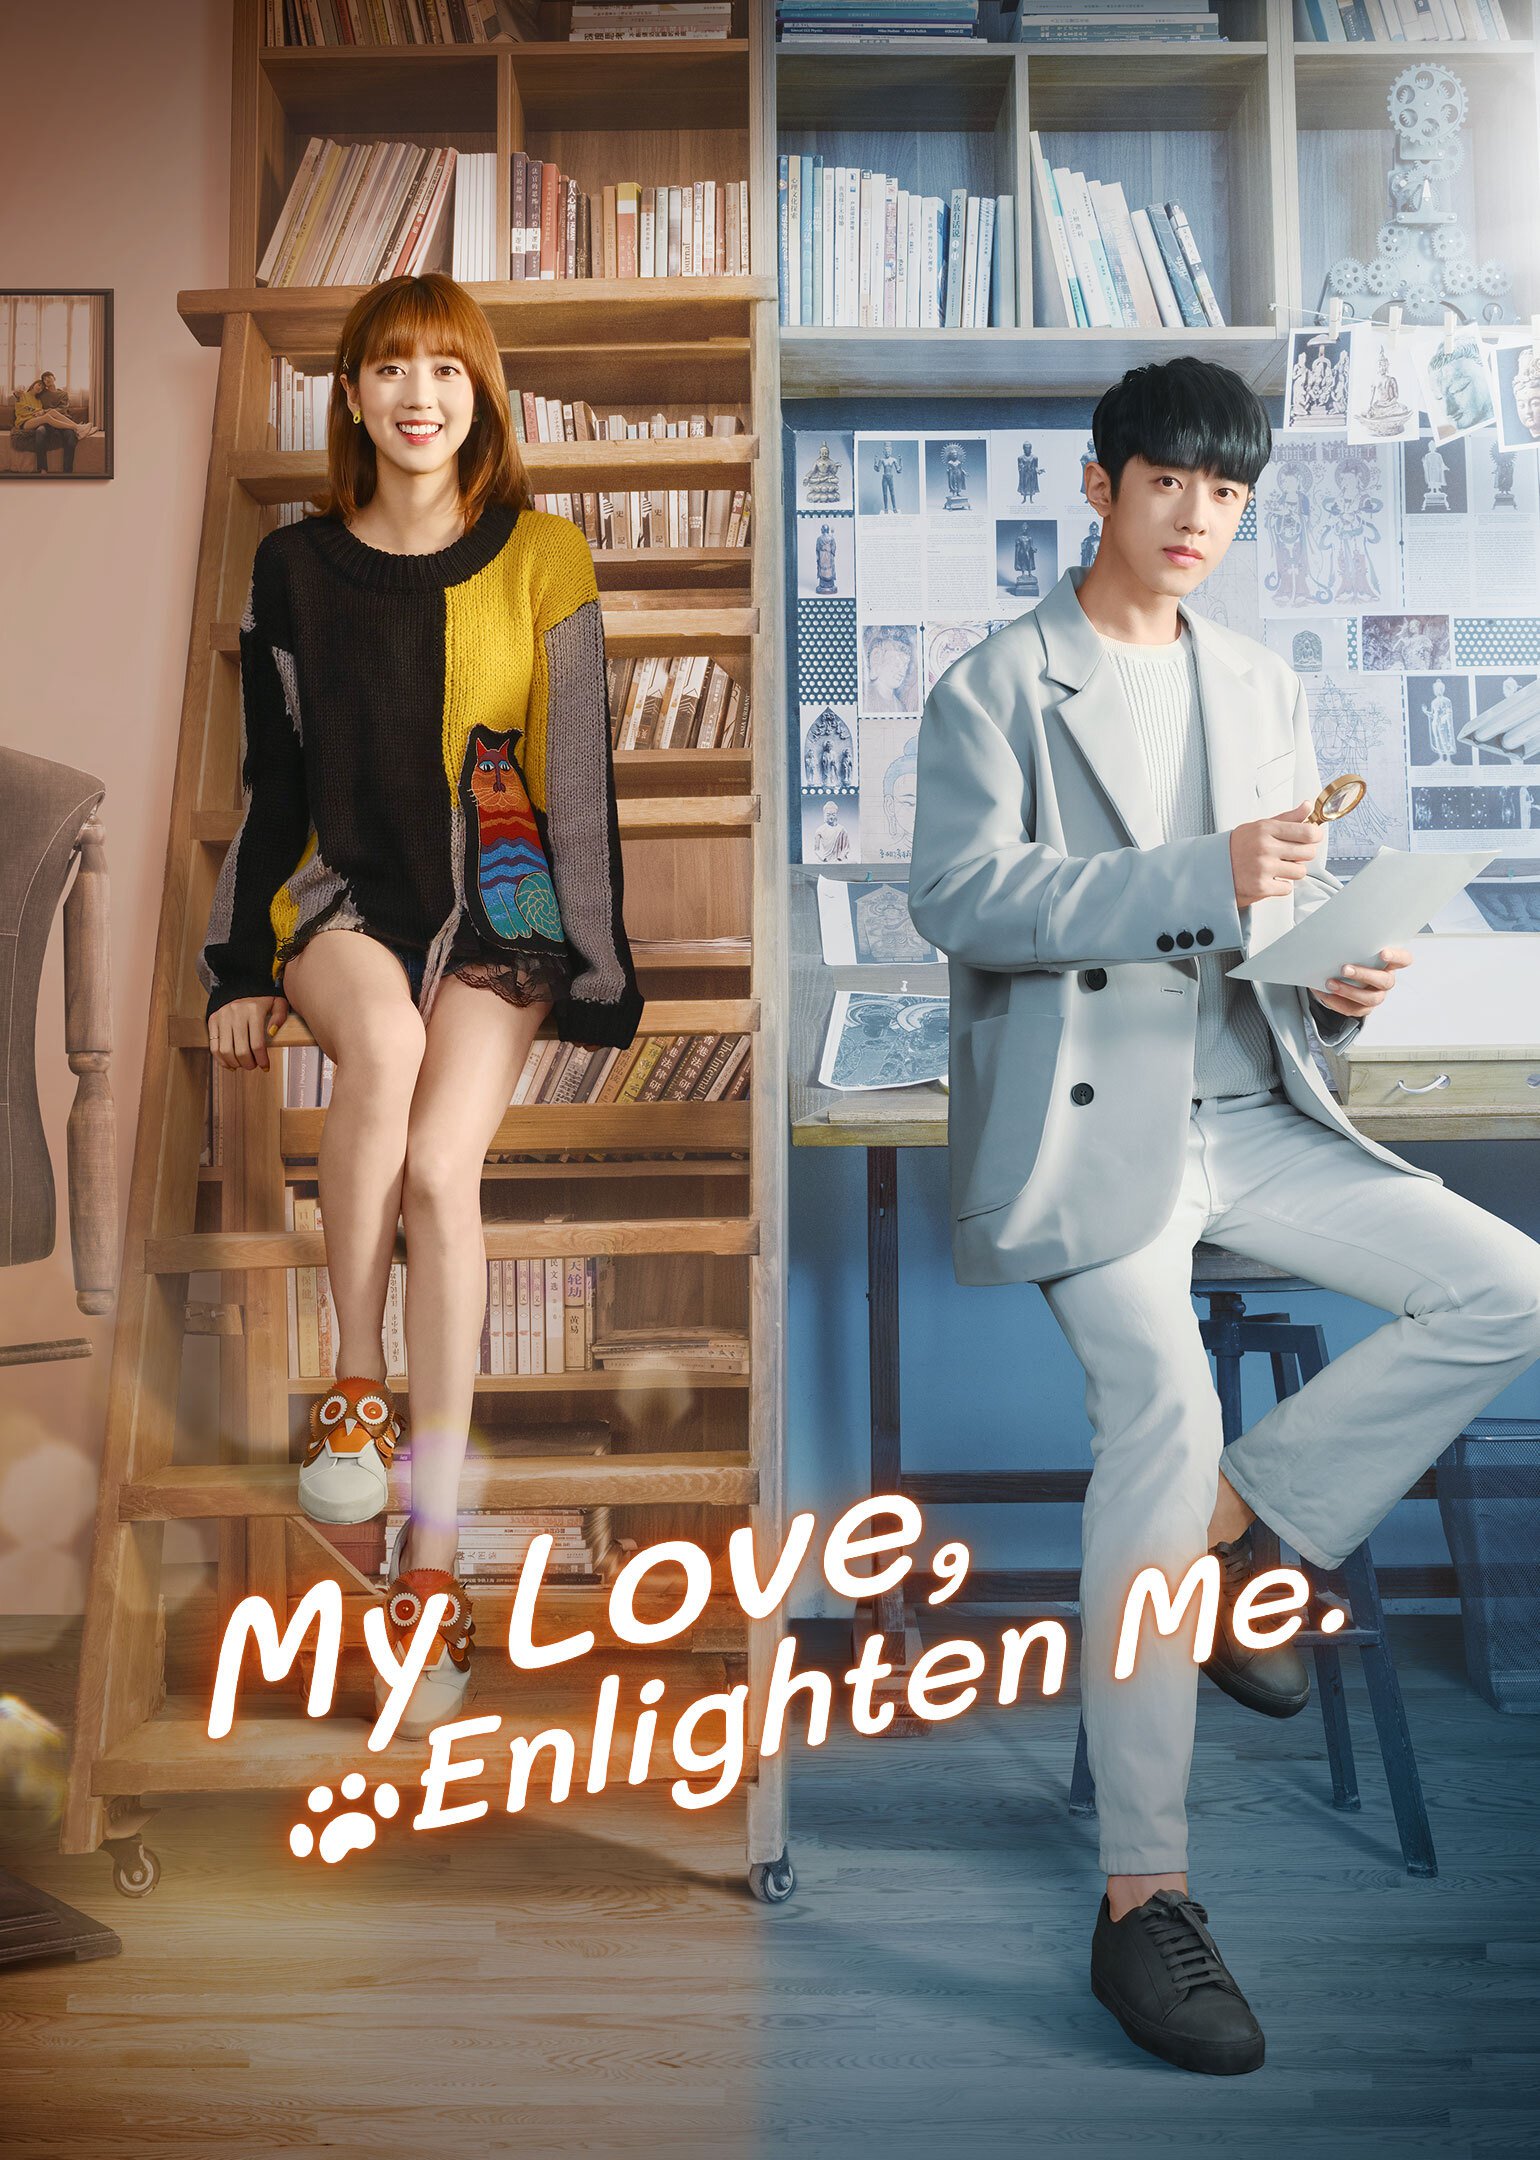 ซีรี่ย์จีน - My Love, Enlighten Me (2020) หนวนหน่วน จำไว้แล้วใจอบอุ่น ตอนที่ 1-24 ซับไทย